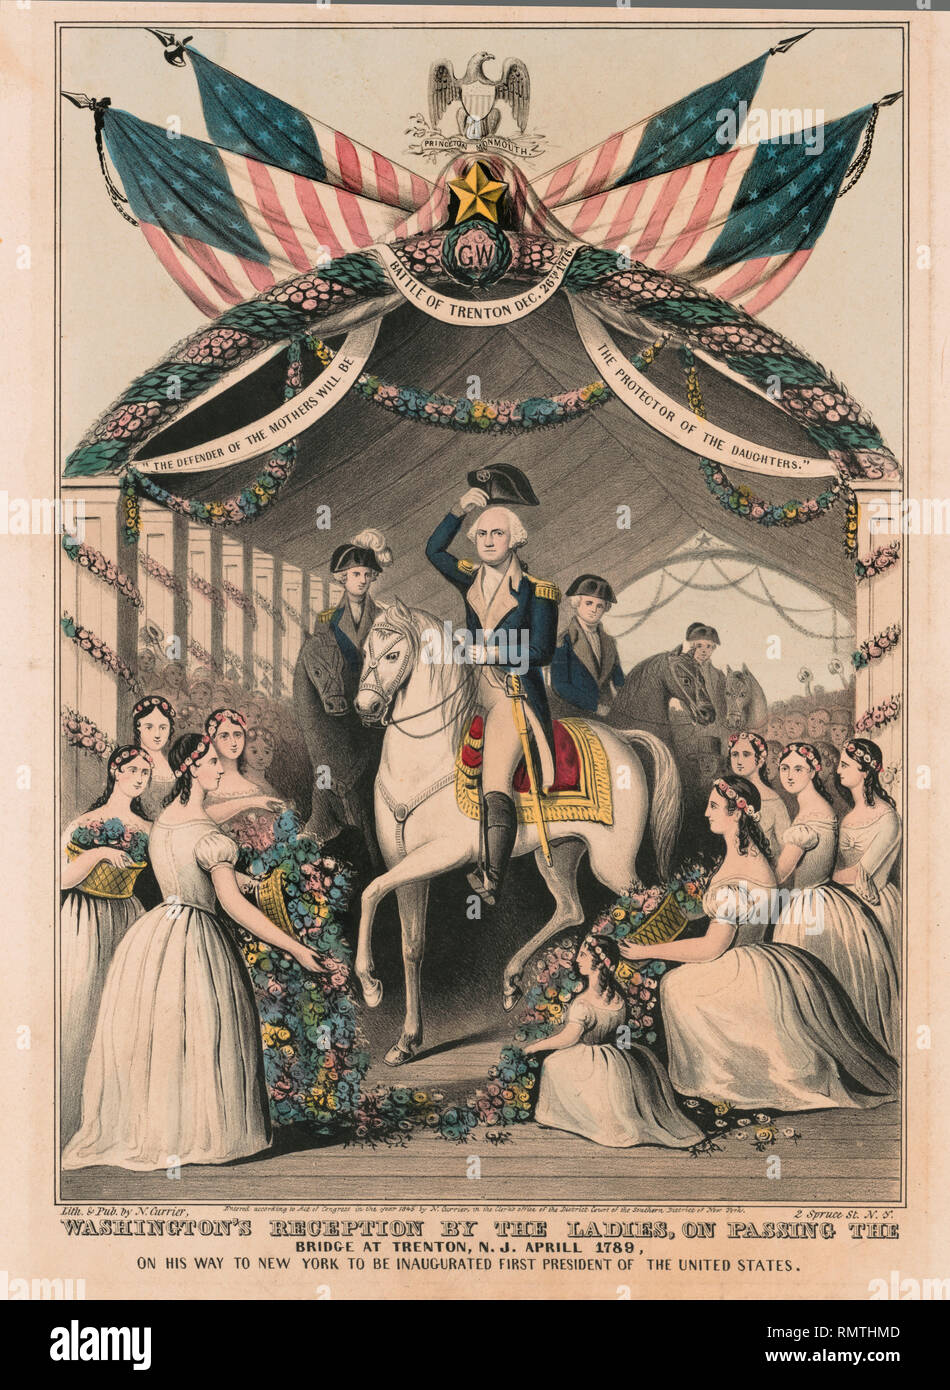 Washington's Empfang durch die Damen, auf der Brücke in Trenton, New Jersey, April 1789, auf dem Weg nach New York eingeweiht, der erste Präsident der Vereinigten Staaten zu sein, Lithographie von Nathaniel Currier, 1845 veröffentlicht. Stockfoto